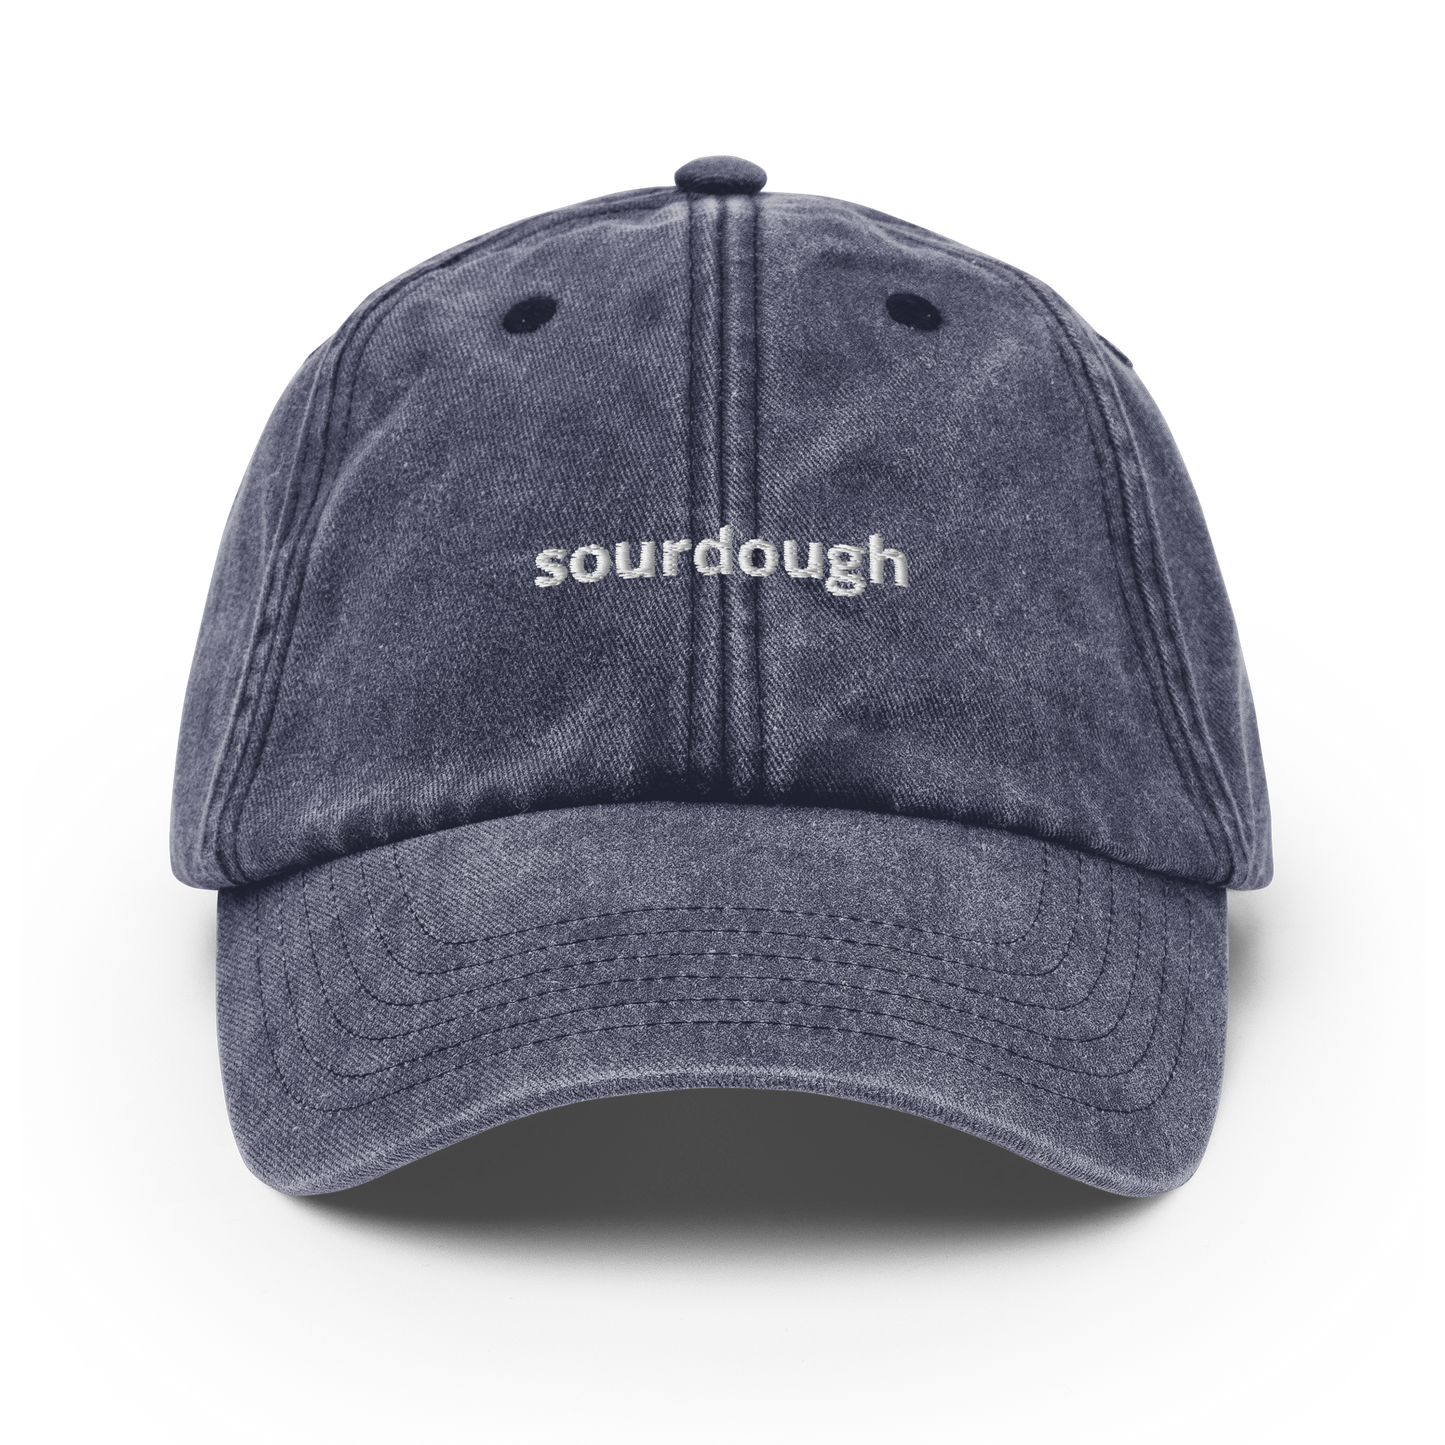 Sourdough - Vintage Hat